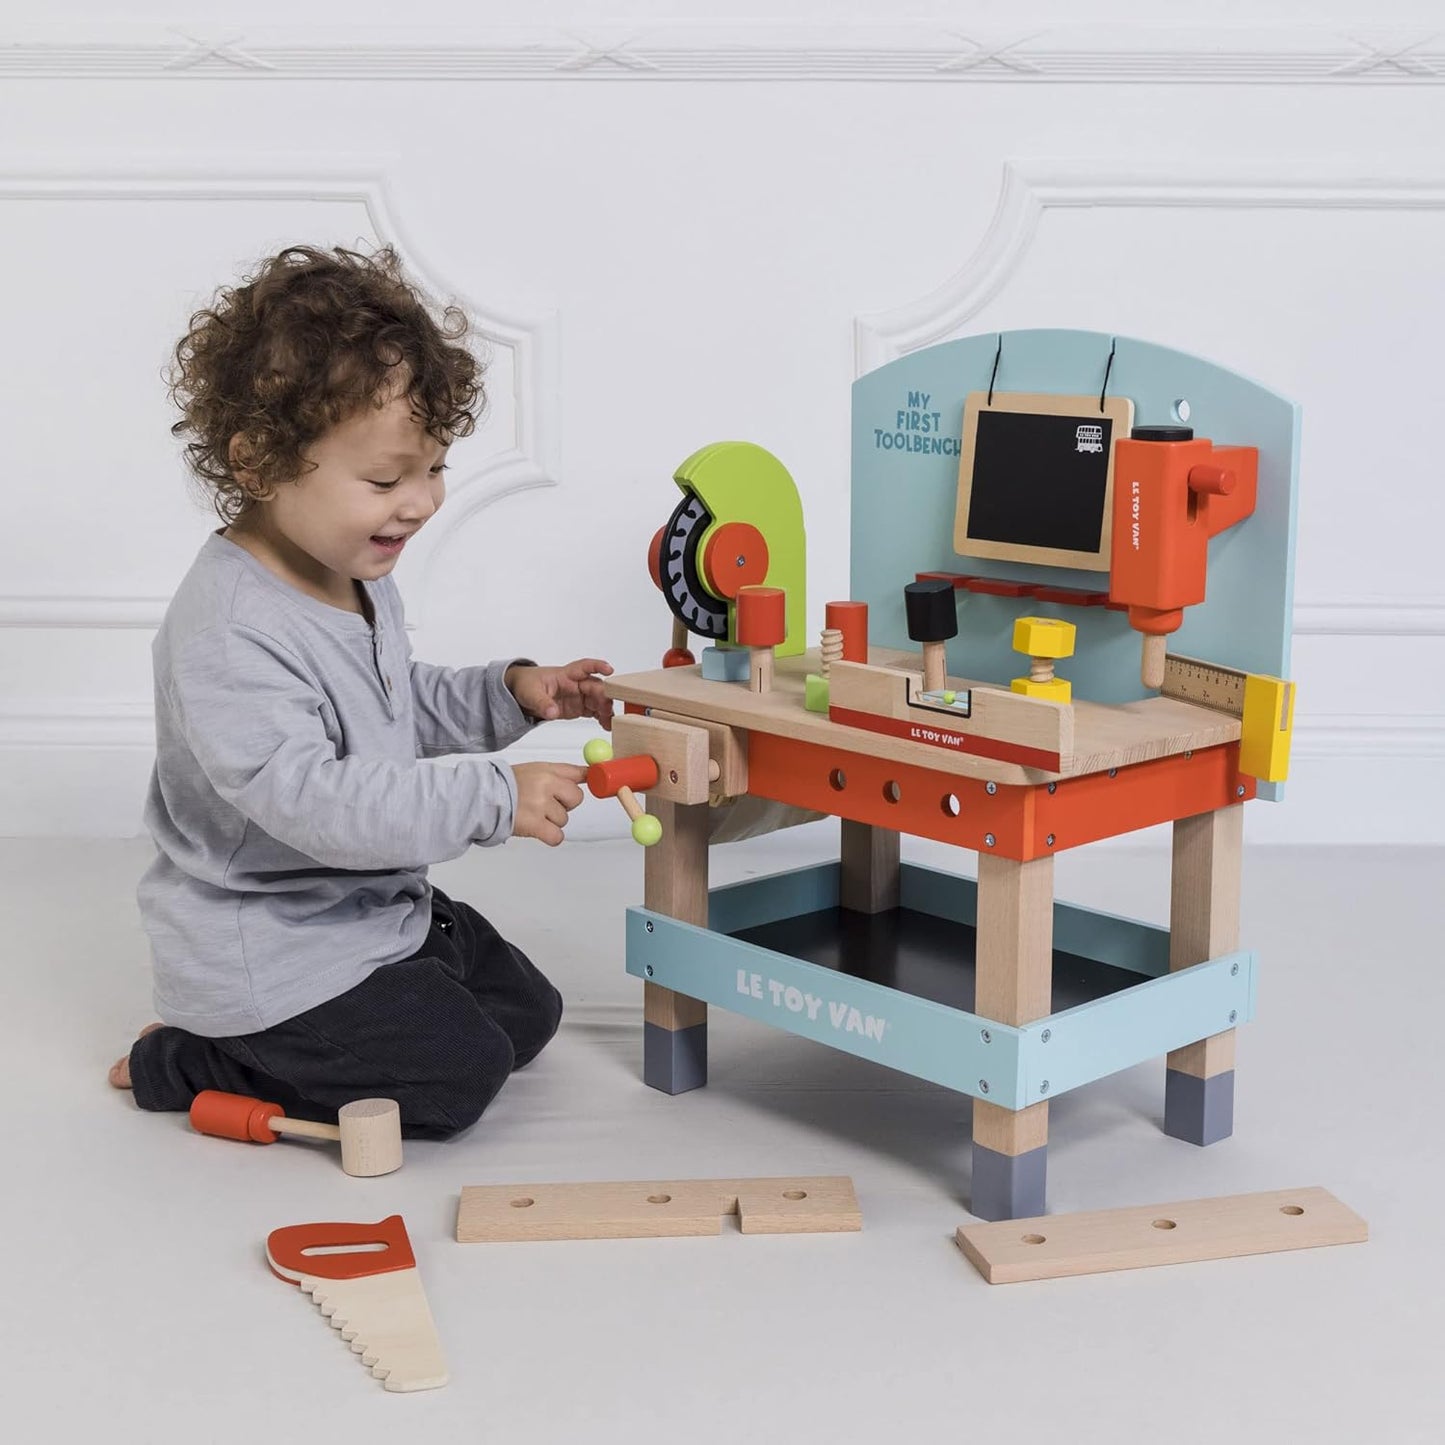 Le Toy Van - Carros e construção educacional Meu primeiro brinquedo de banco de ferramentas Conjunto de banco de ferramentas de madeira para dramatização | Finja brincar com ferramentas de madeira - adequado para crianças de 3 anos ou mais